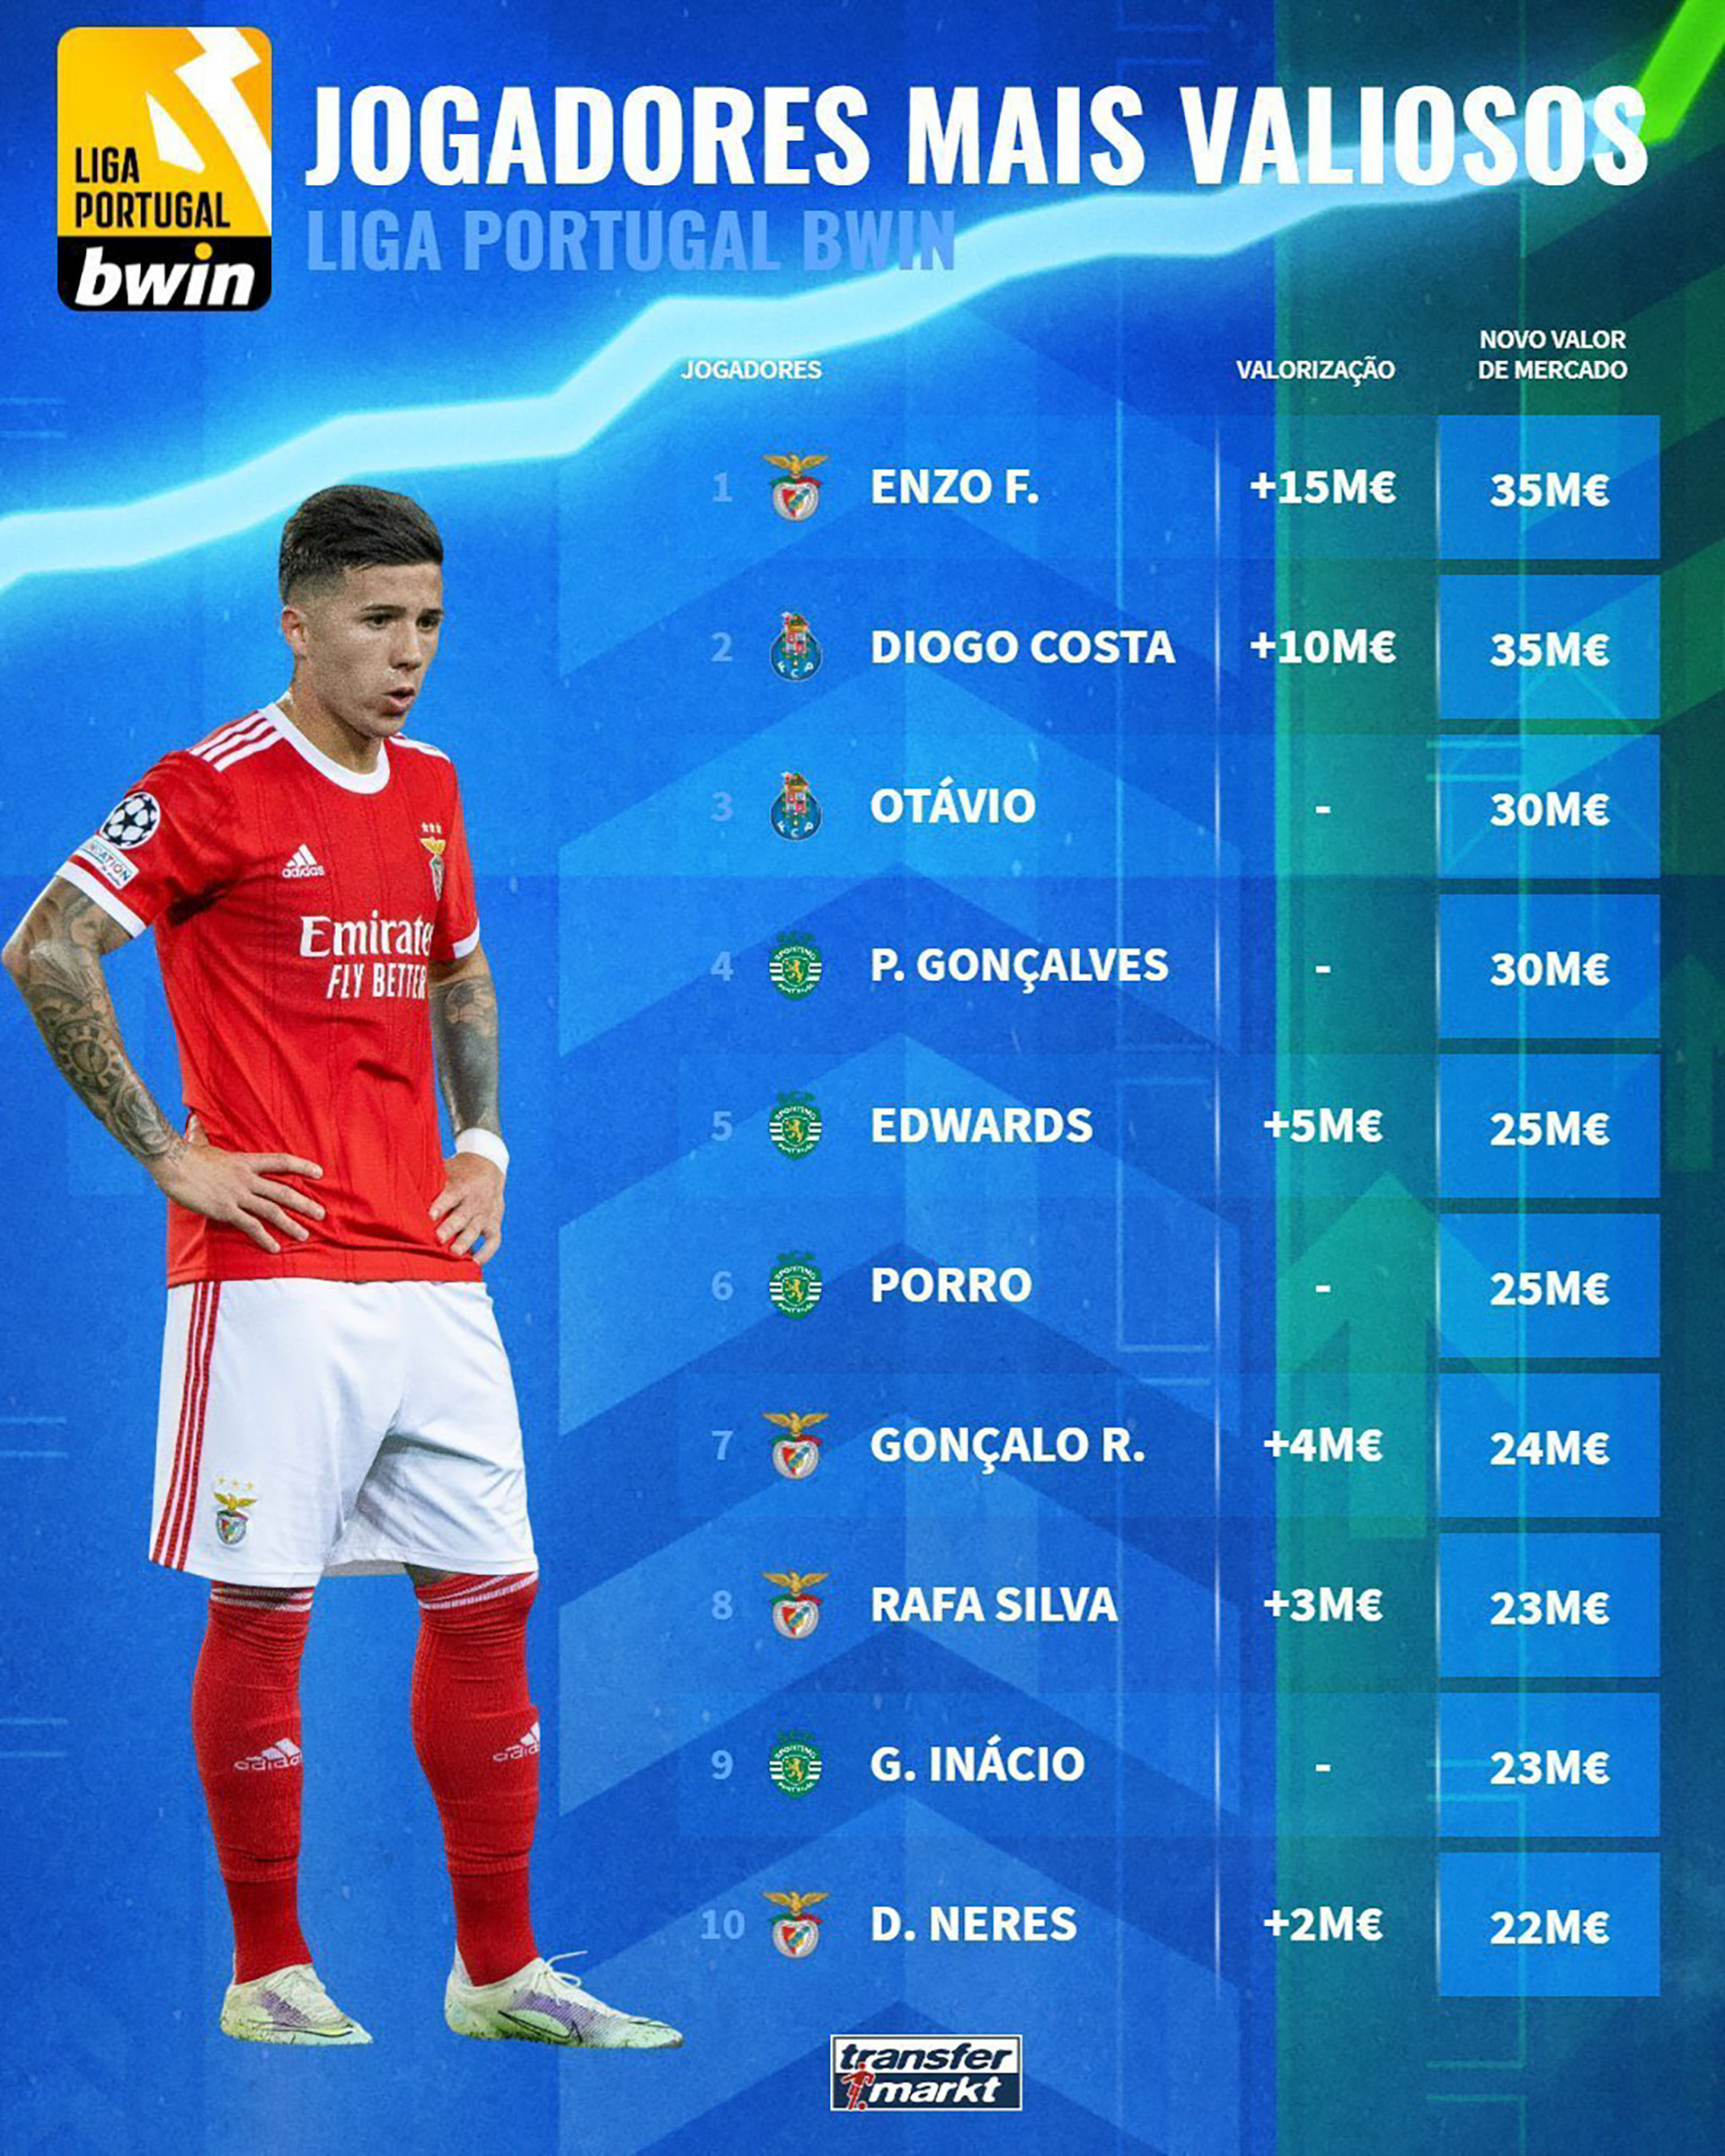 ¿Quién es el jugador más caro de la liga portuguesa